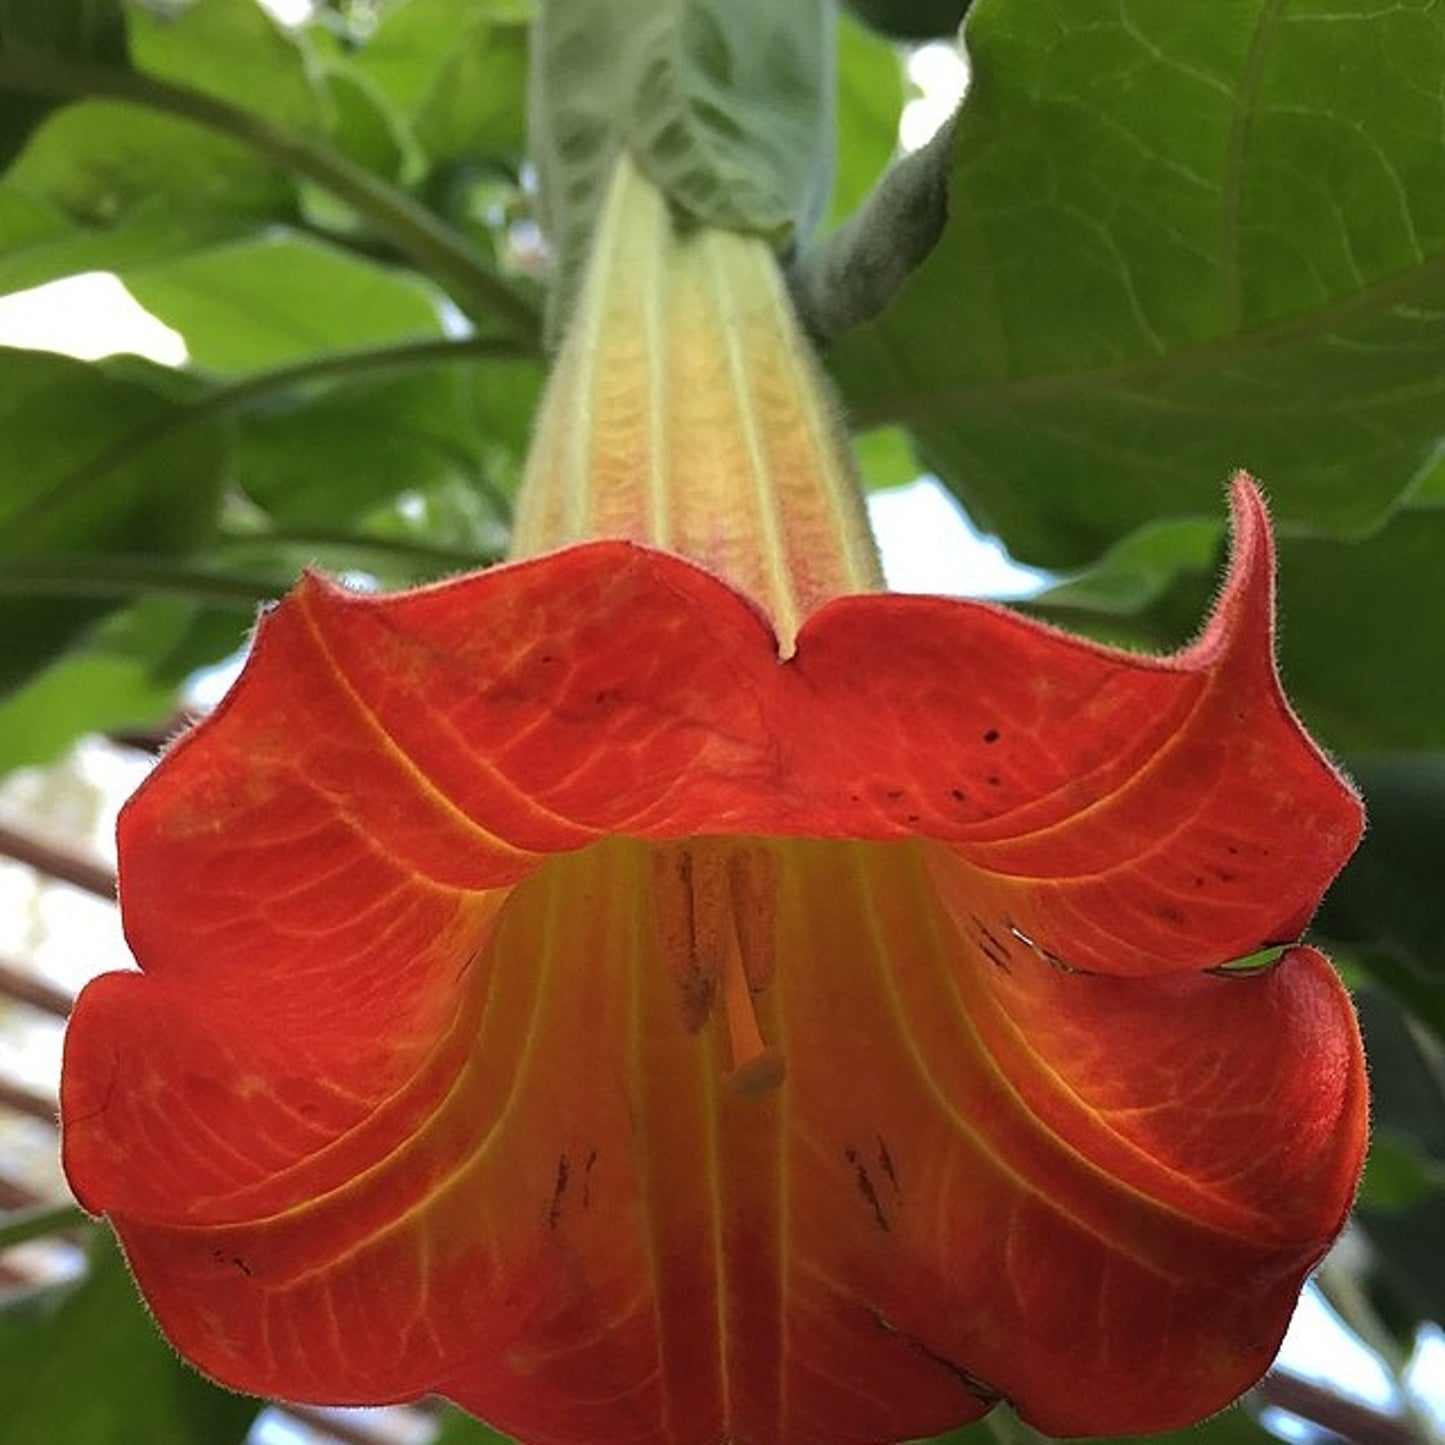 Orange Angel's Trumpet - Brugmansia sanguinea 'Aurantia' - 20 X seeds